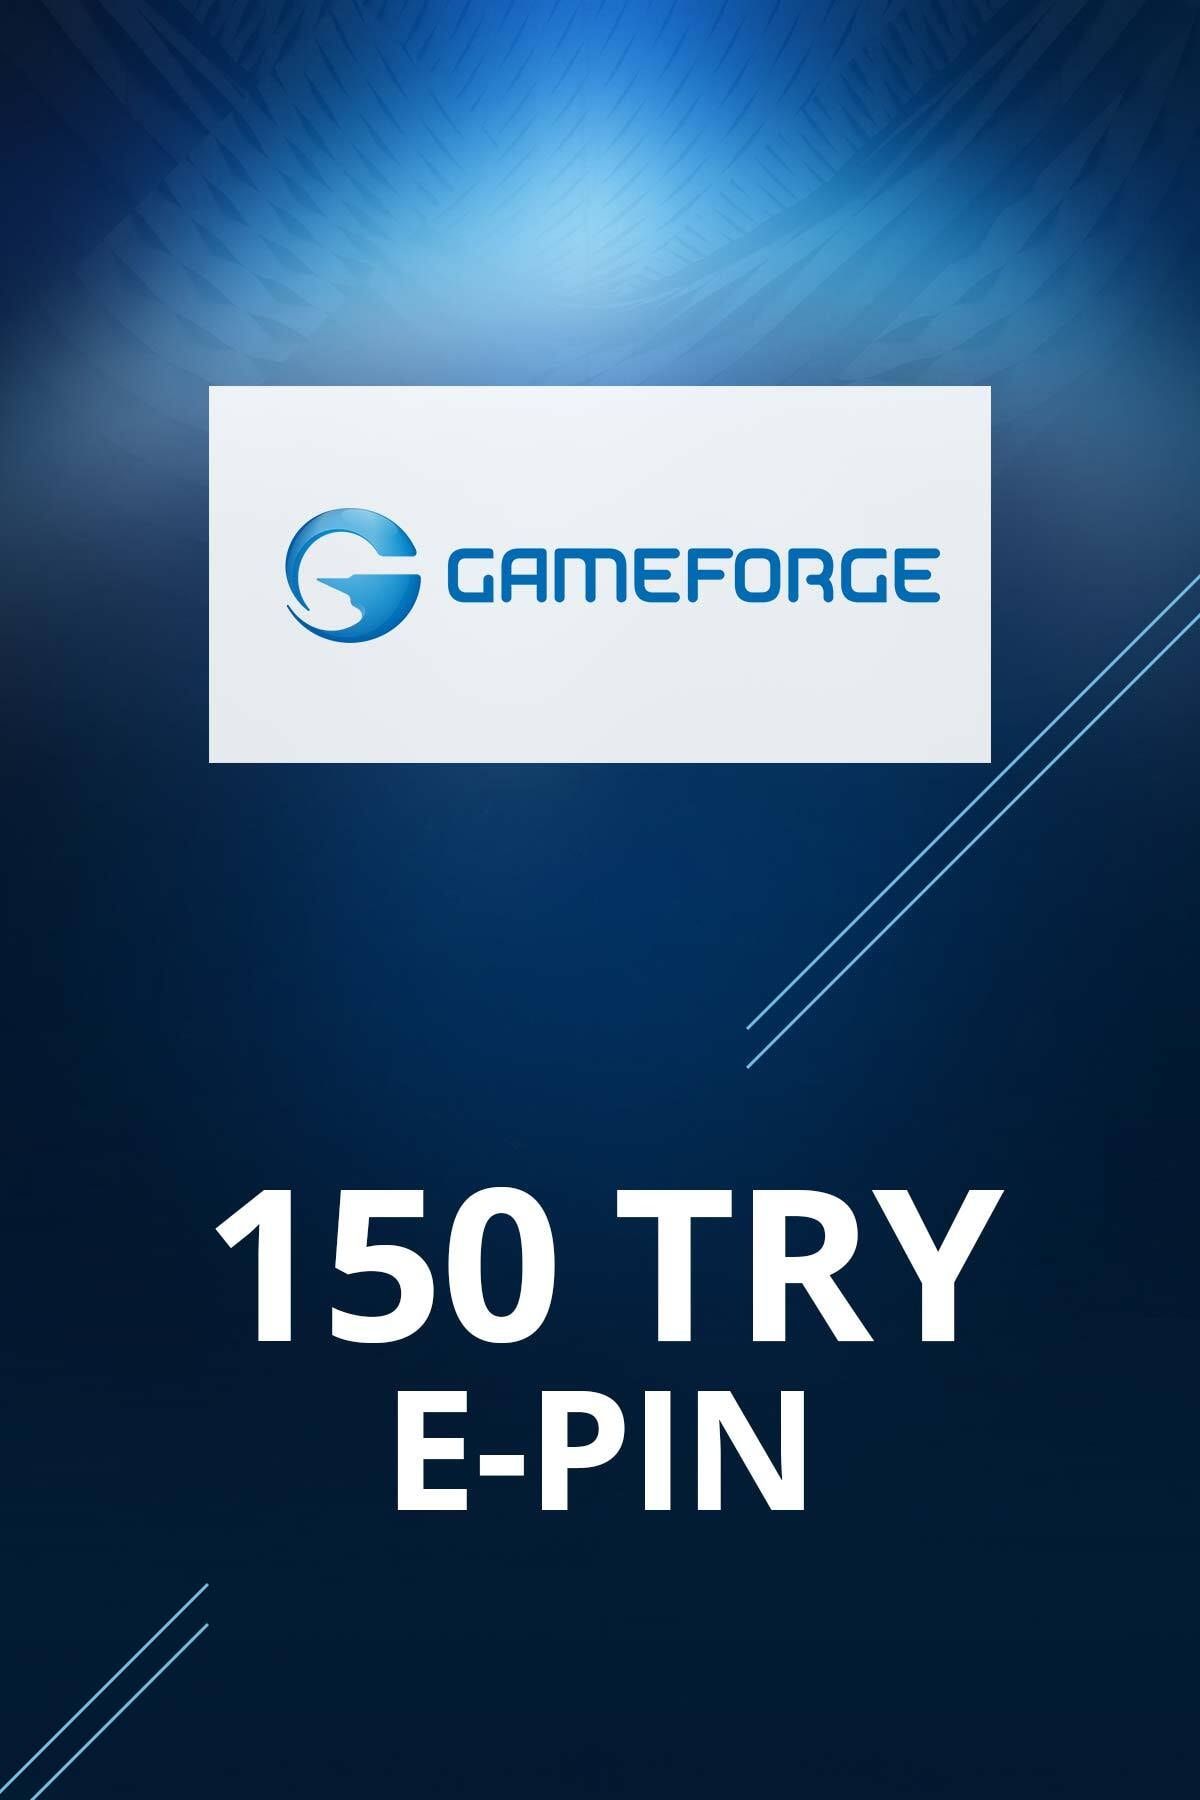 Gameforge 150 TL E-pin